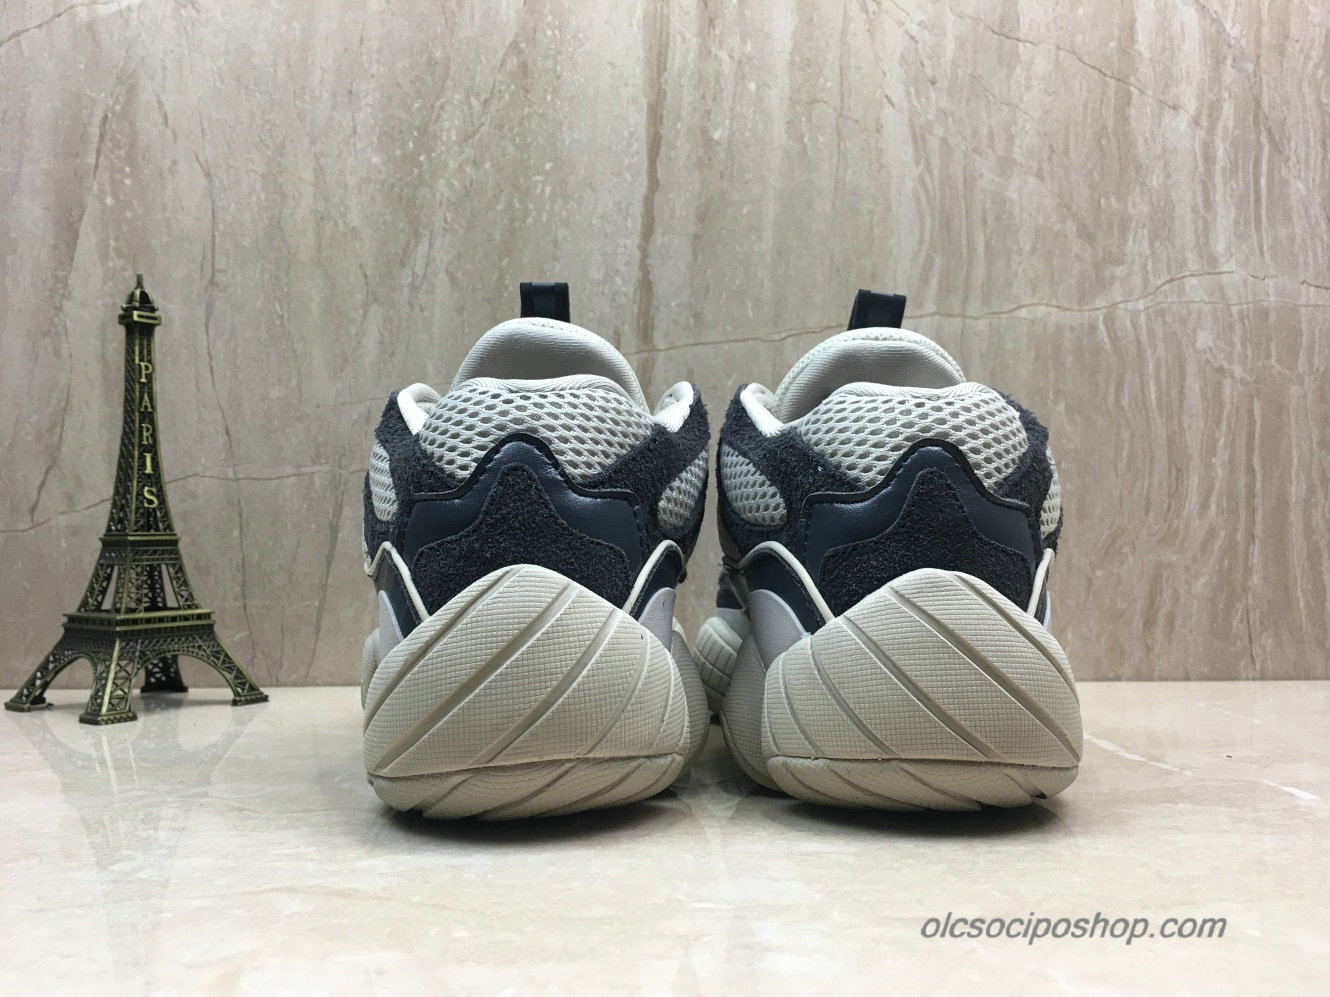 Adidas Yeezy Desert Rat 500 Blush Fekete/Szürke Cipők (D82900) - Kattintásra bezárul